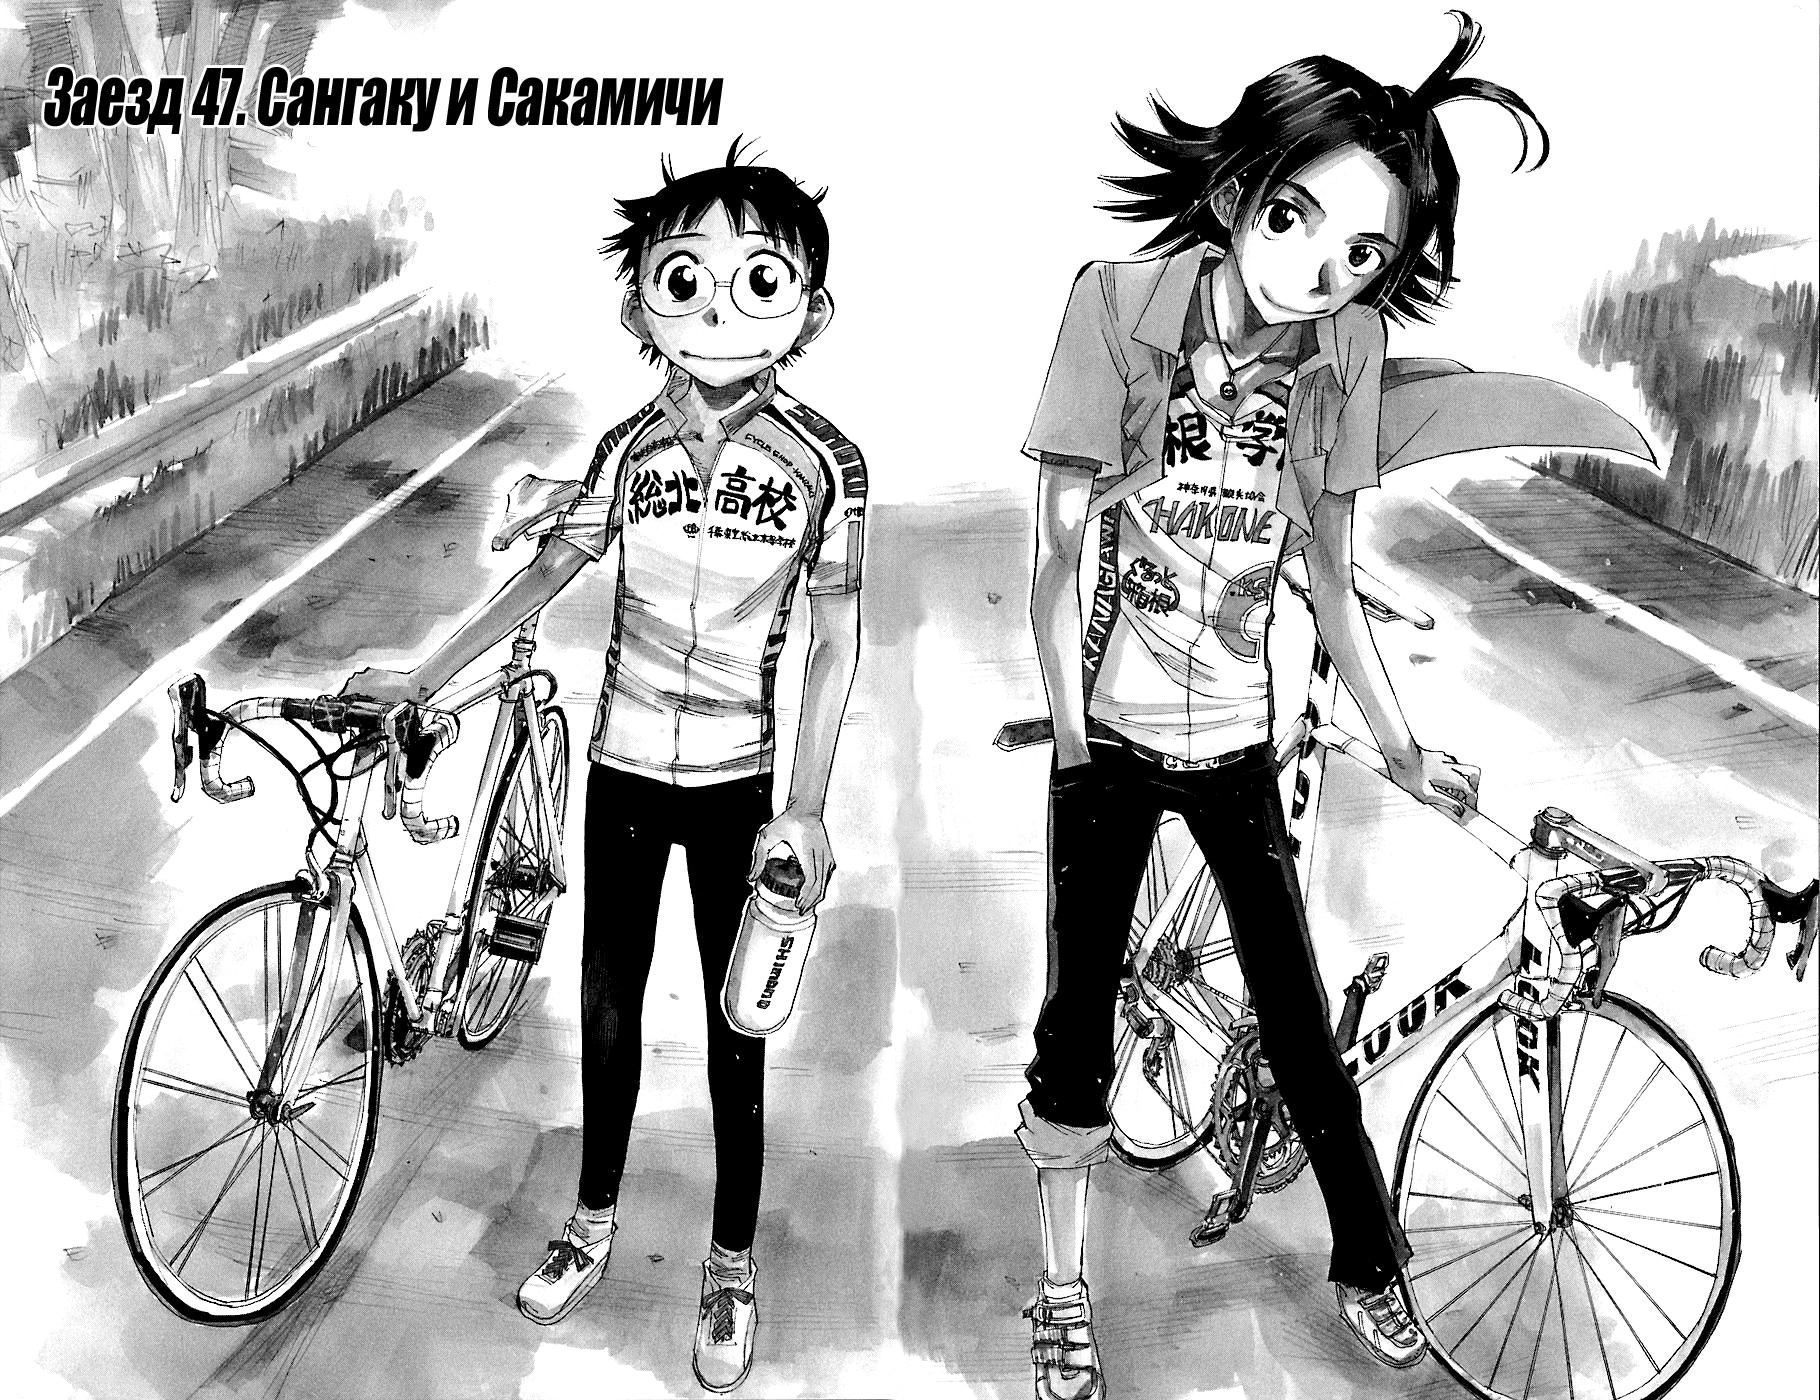 Трусливый велосипедист 6 - 47 Сангаку и Скамичи